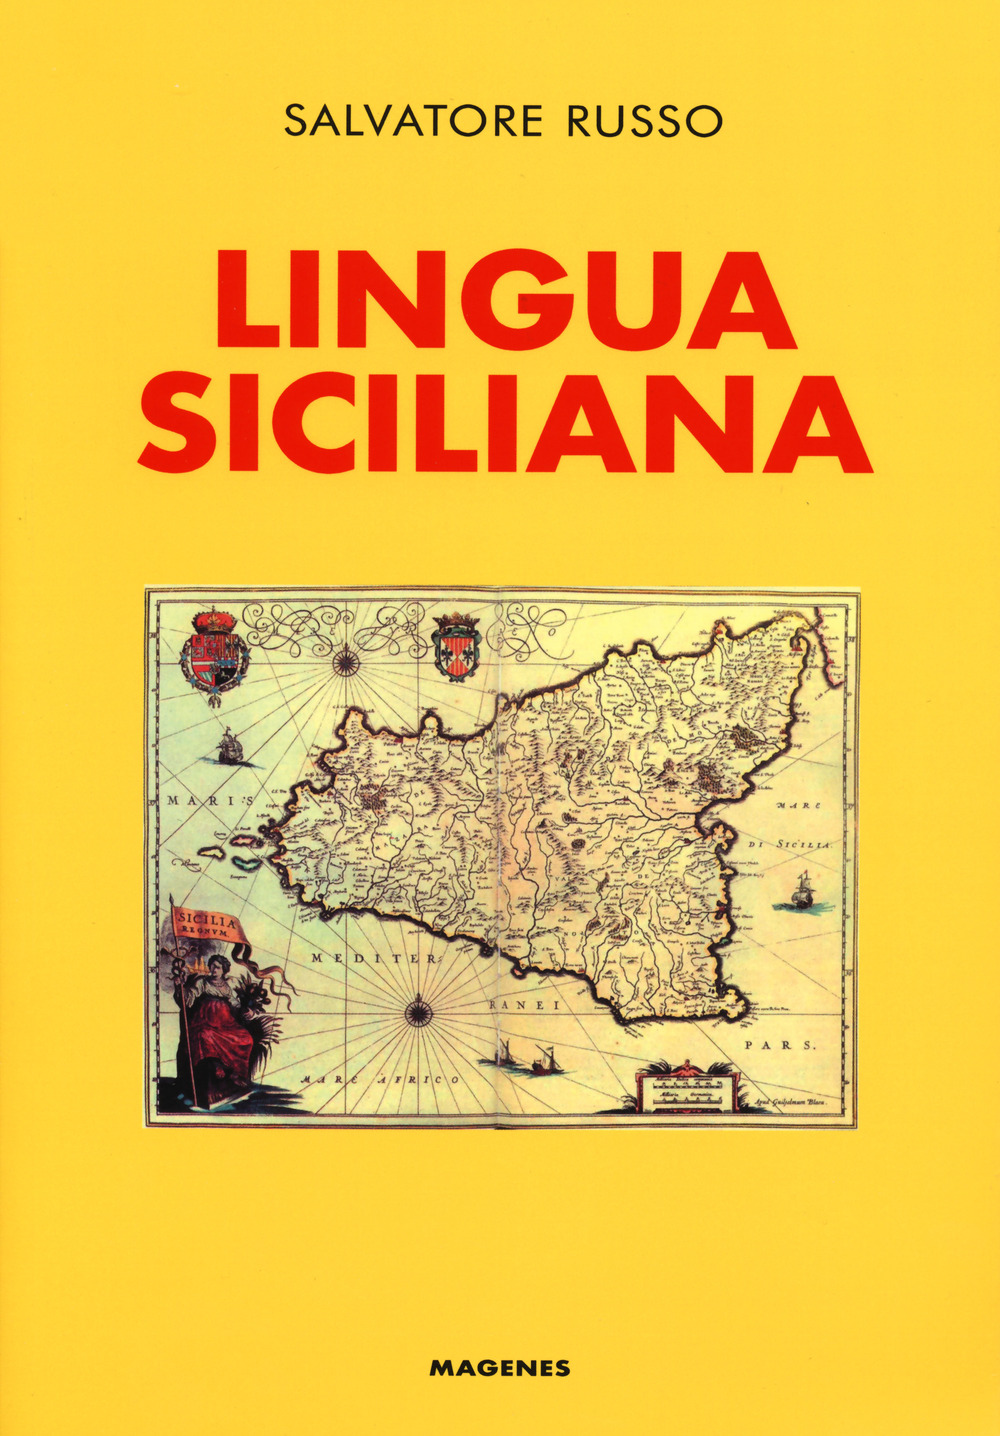 Lingua siciliana